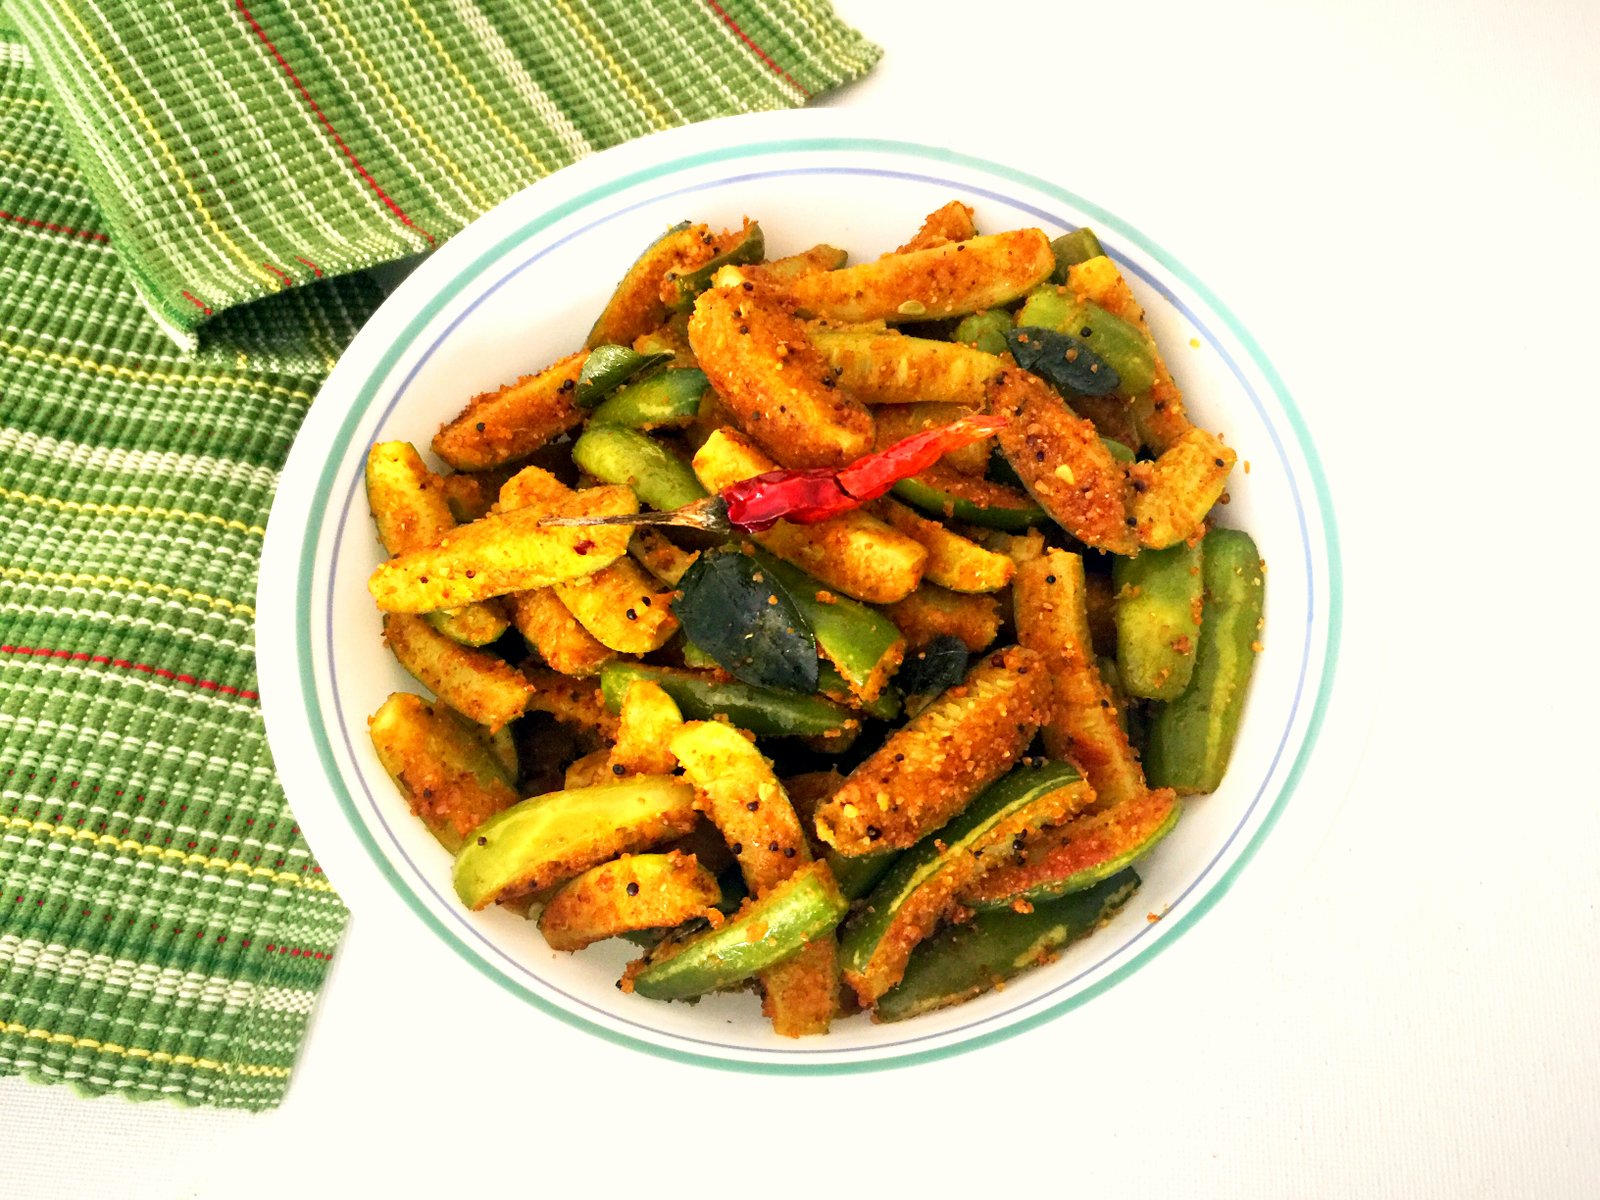 Kovakkai Podi Curry Recipe - Tamil Nadu Style Ivy Gourd Stir Fry